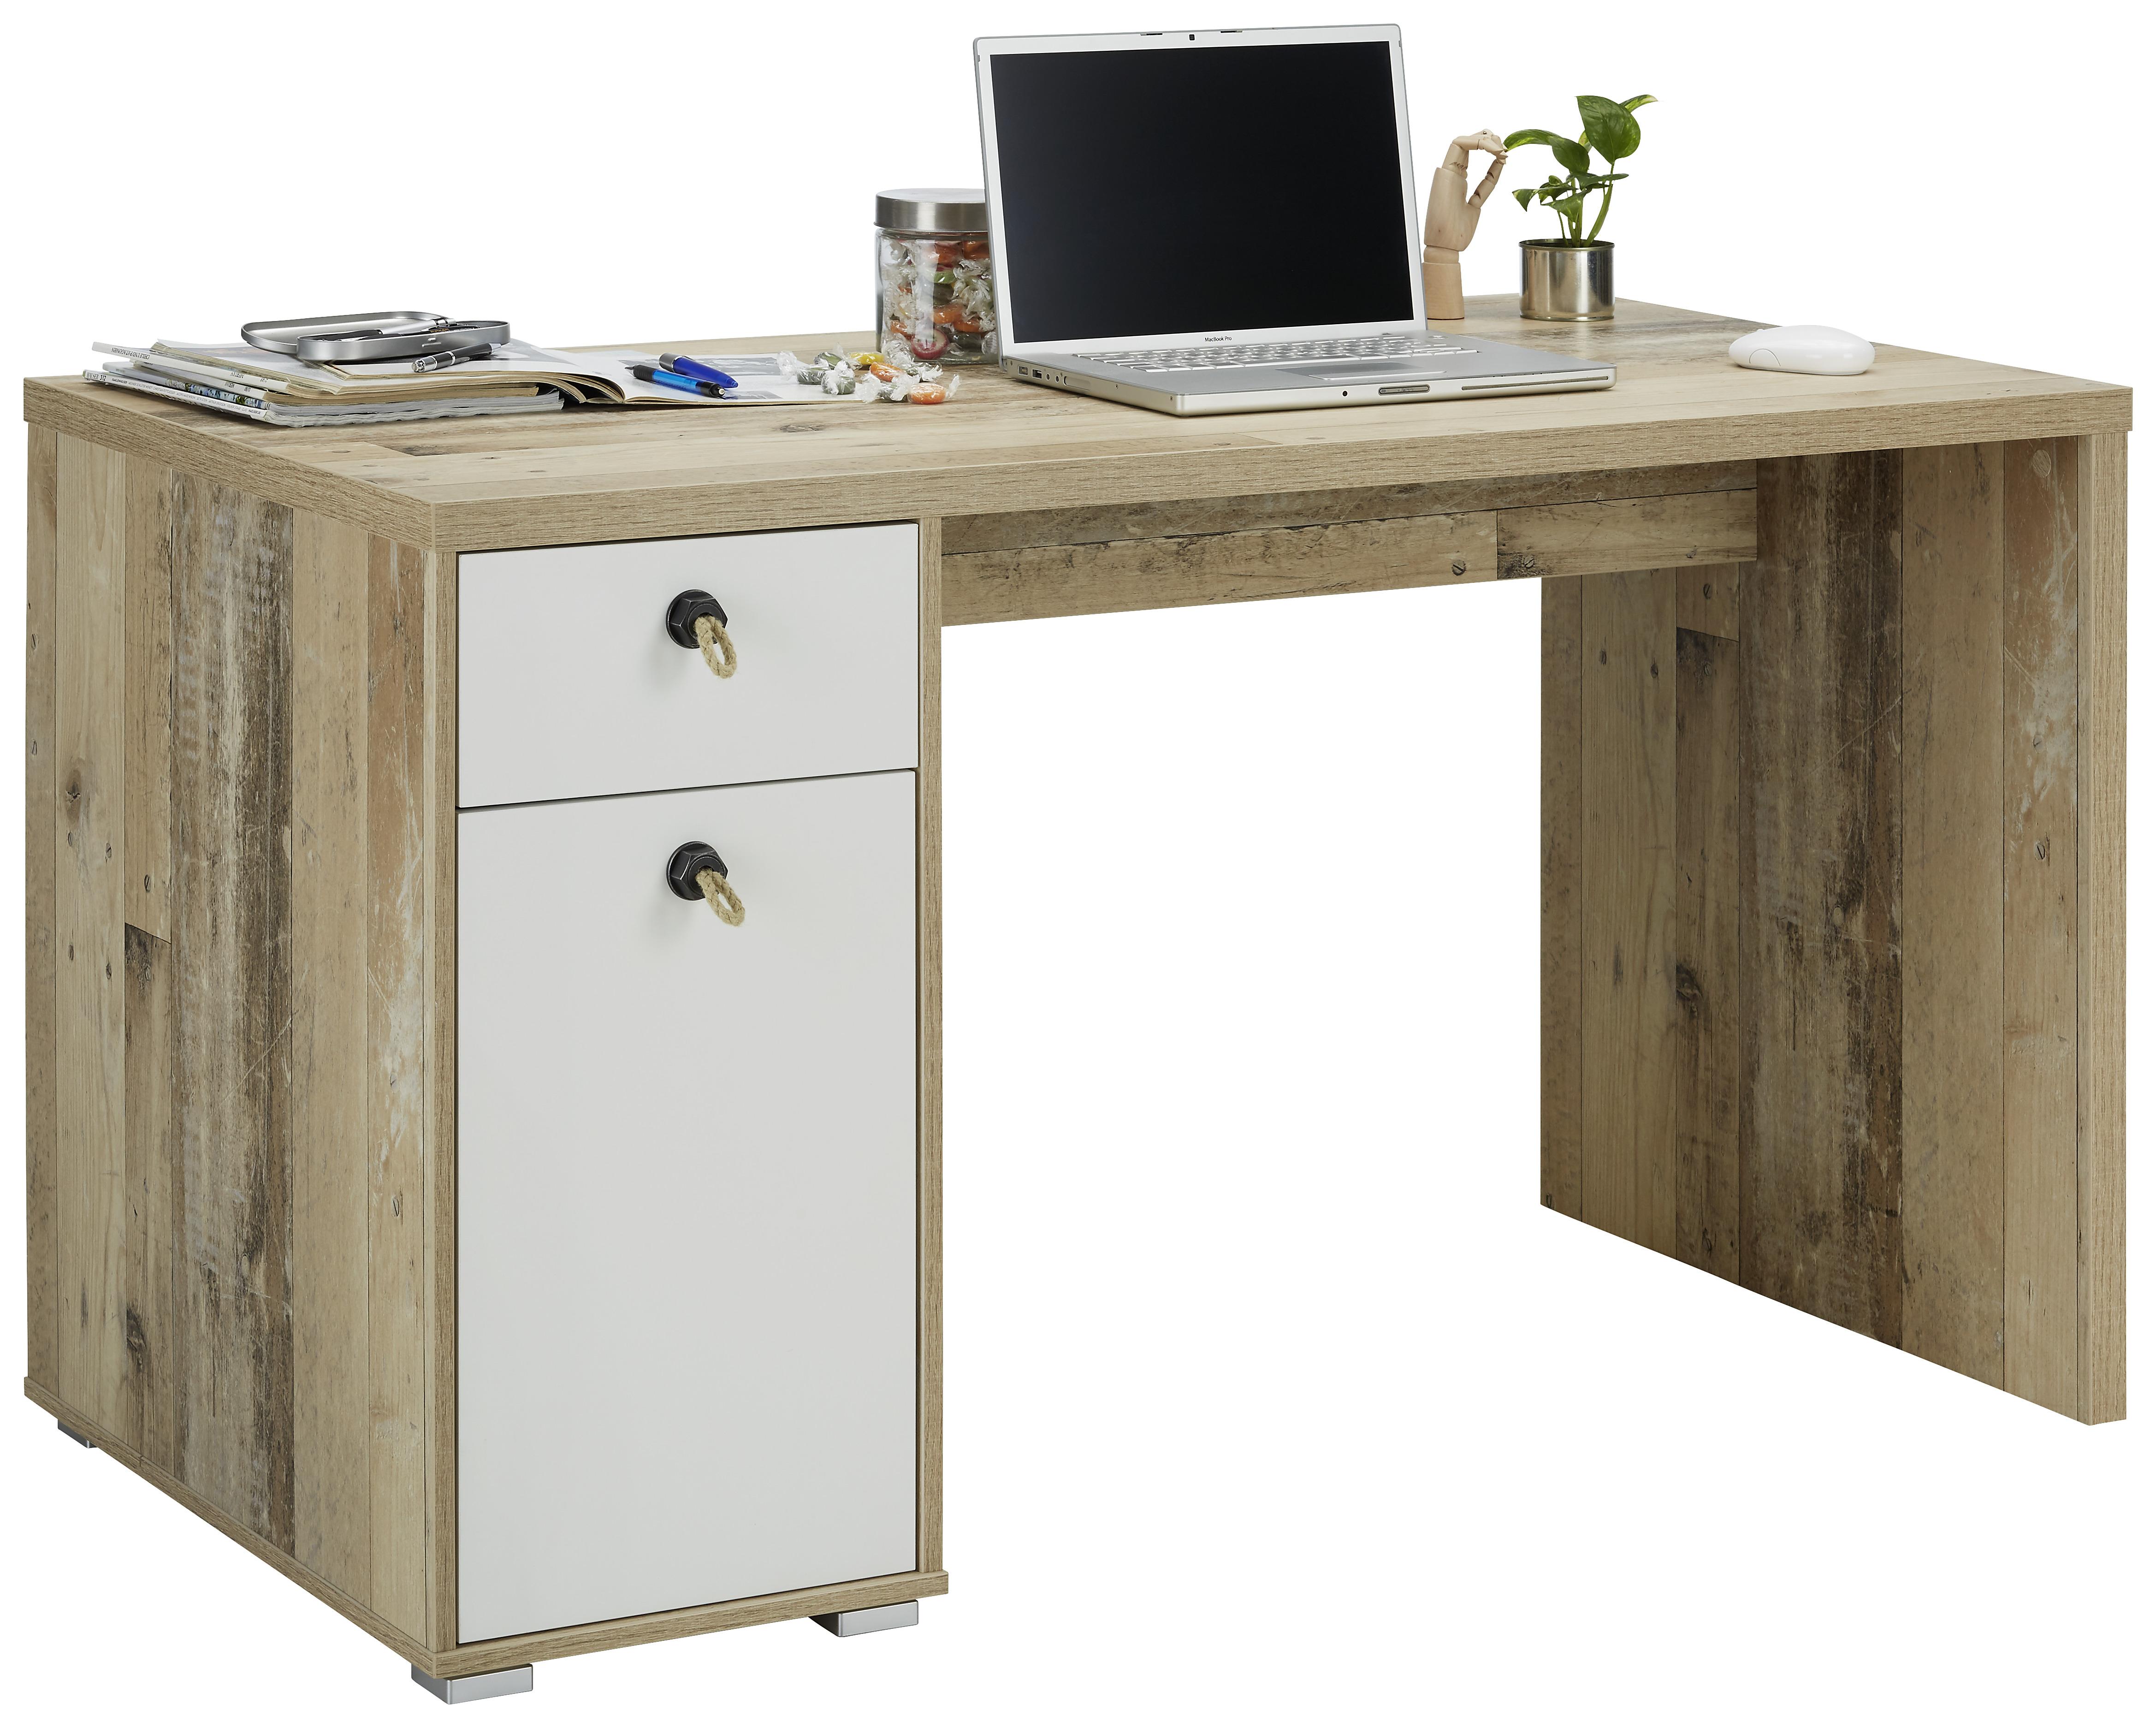 Schreibtisch in Eichefarben Old Style - Eichefarben/Anthrazit, KONVENTIONELL, Naturmaterialien/Holzwerkstoff (130/76/70cm) - Modern Living